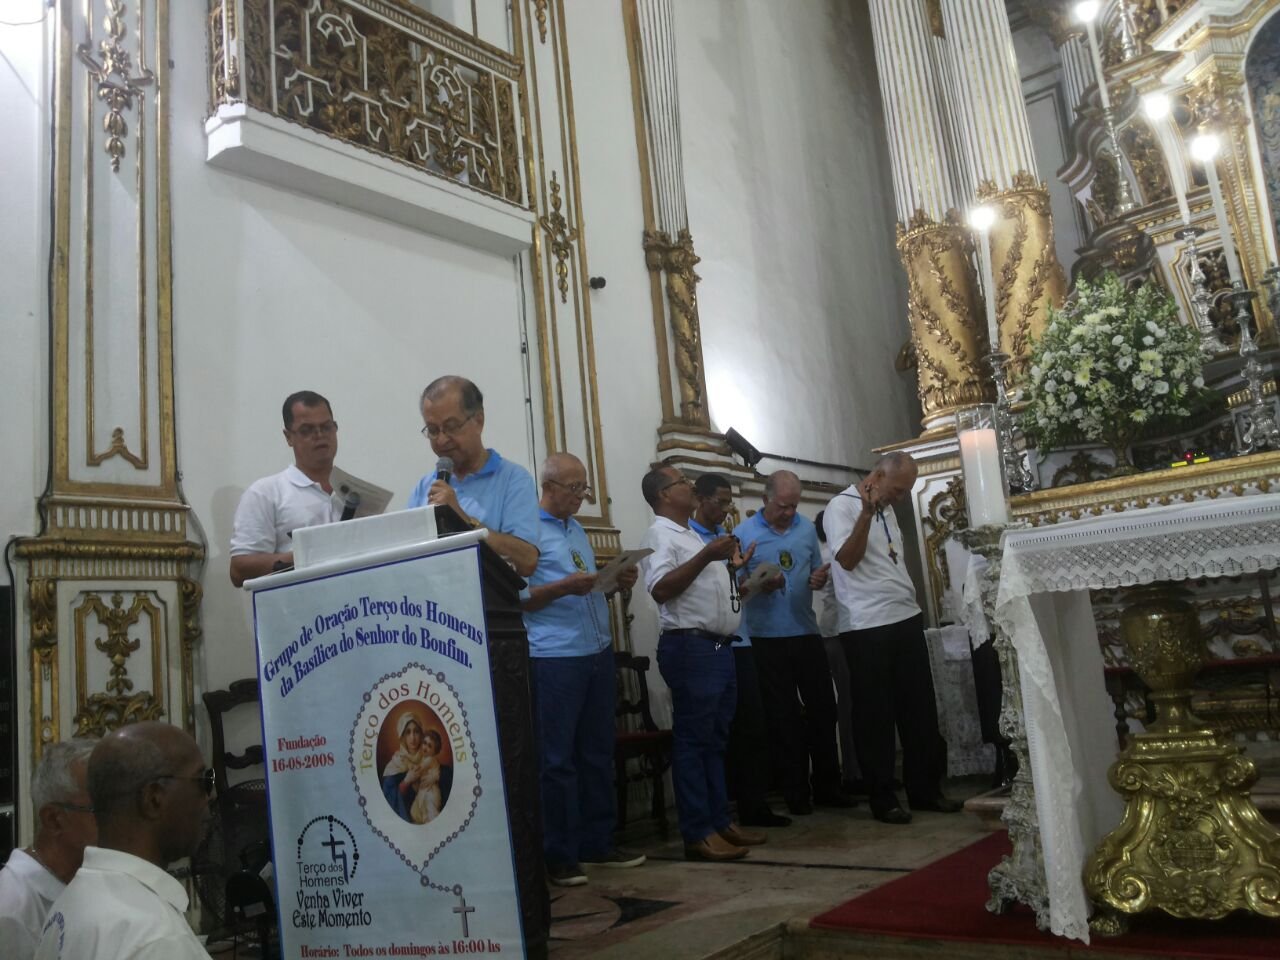 Peregrinos passam pela Porta da Misericrdia na Baslica Santurio neste final de semana